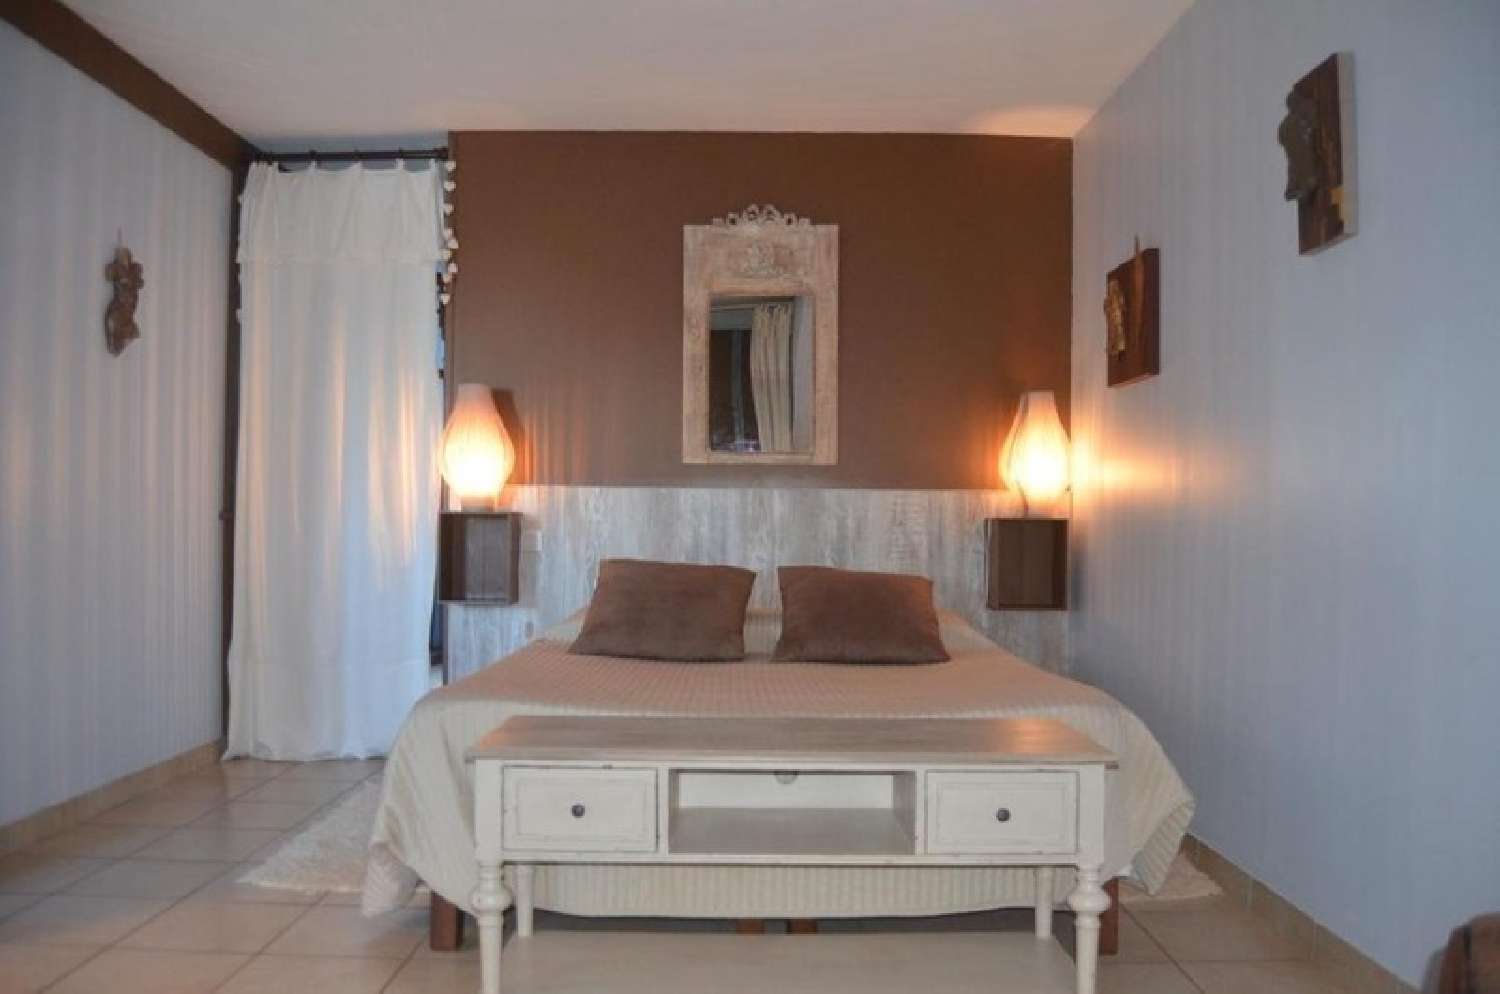  à vendre maison Chaumont-sur-Loire Loir-et-Cher 3